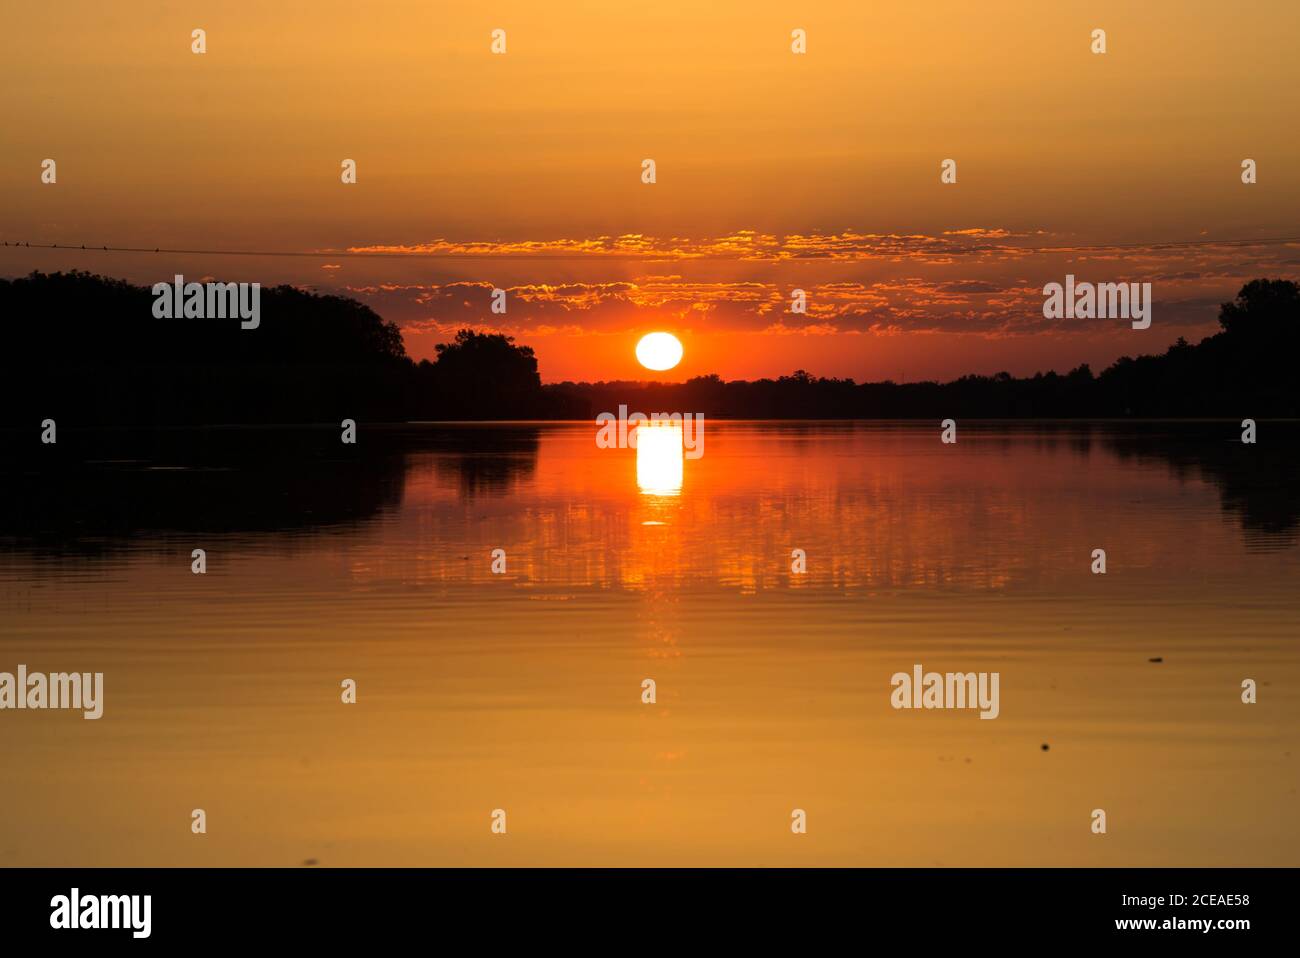 Schöner Sonnenaufgang über dem Fluss, See. Die orangefarbene Sonnenscheibe wird auf der Wasseroberfläche reflektiert. Stockfoto